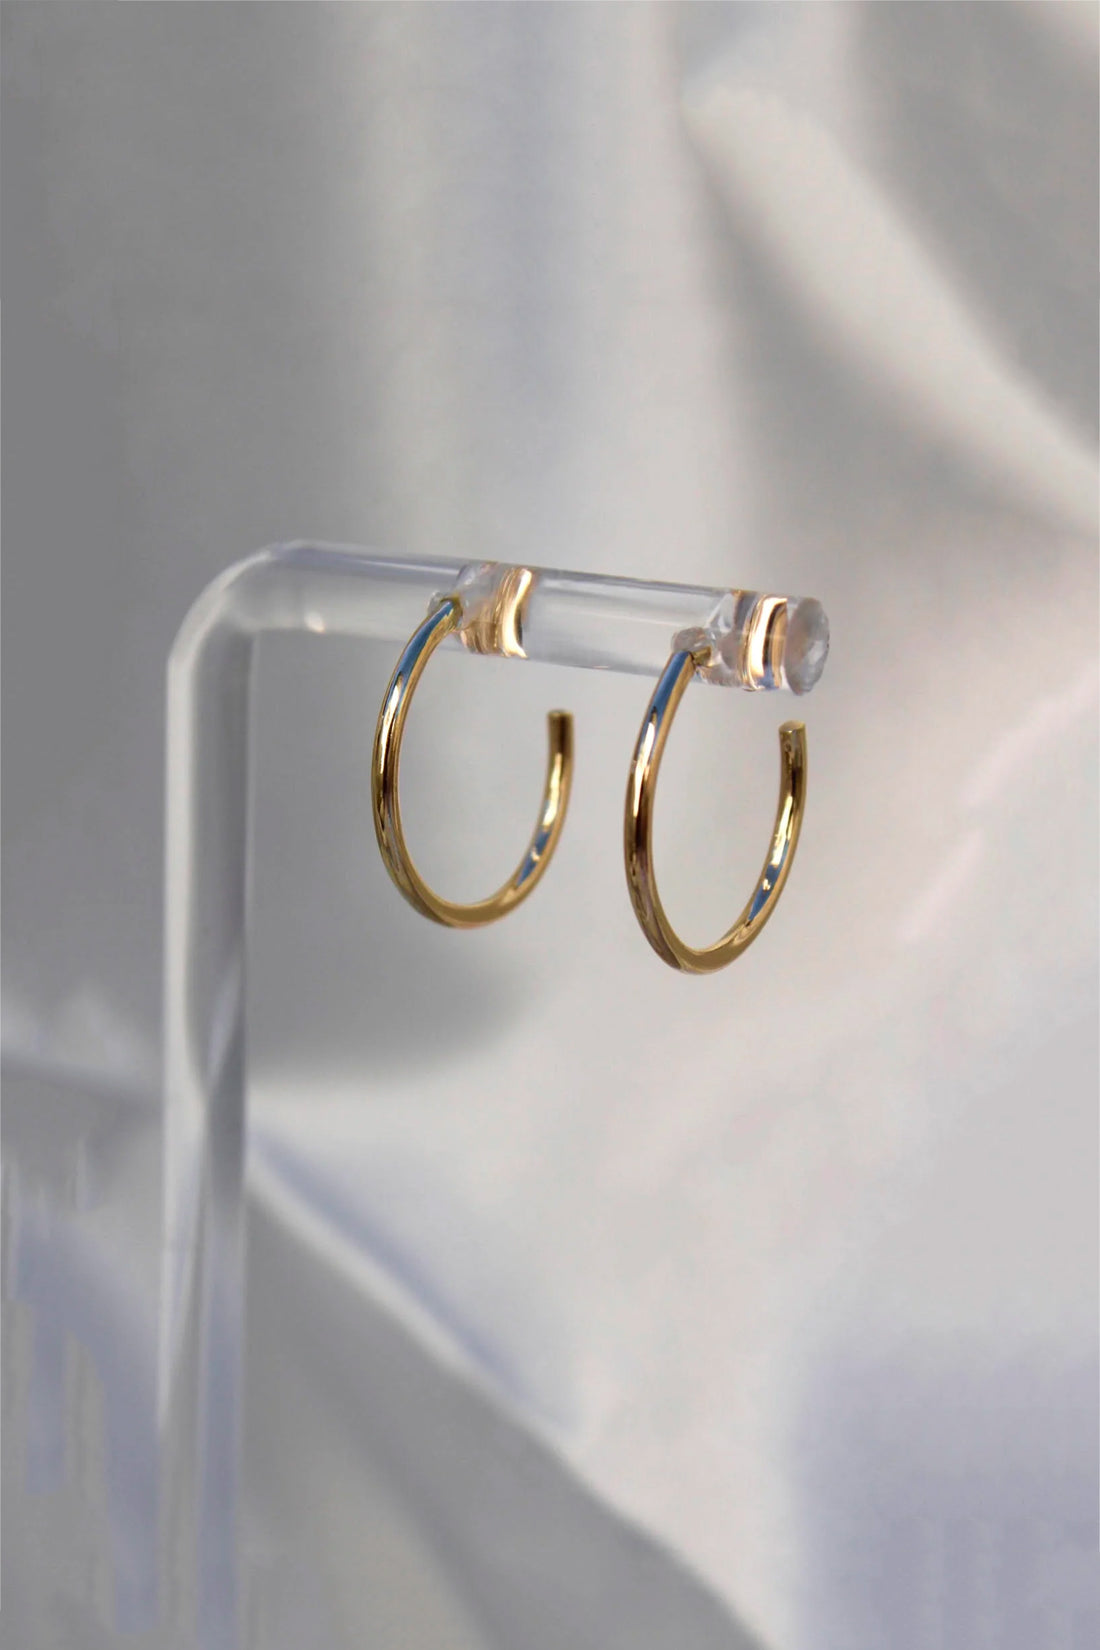 Sadie Jo Jewelry Co. Essential Huggie Hoops in 10k Solid Gold